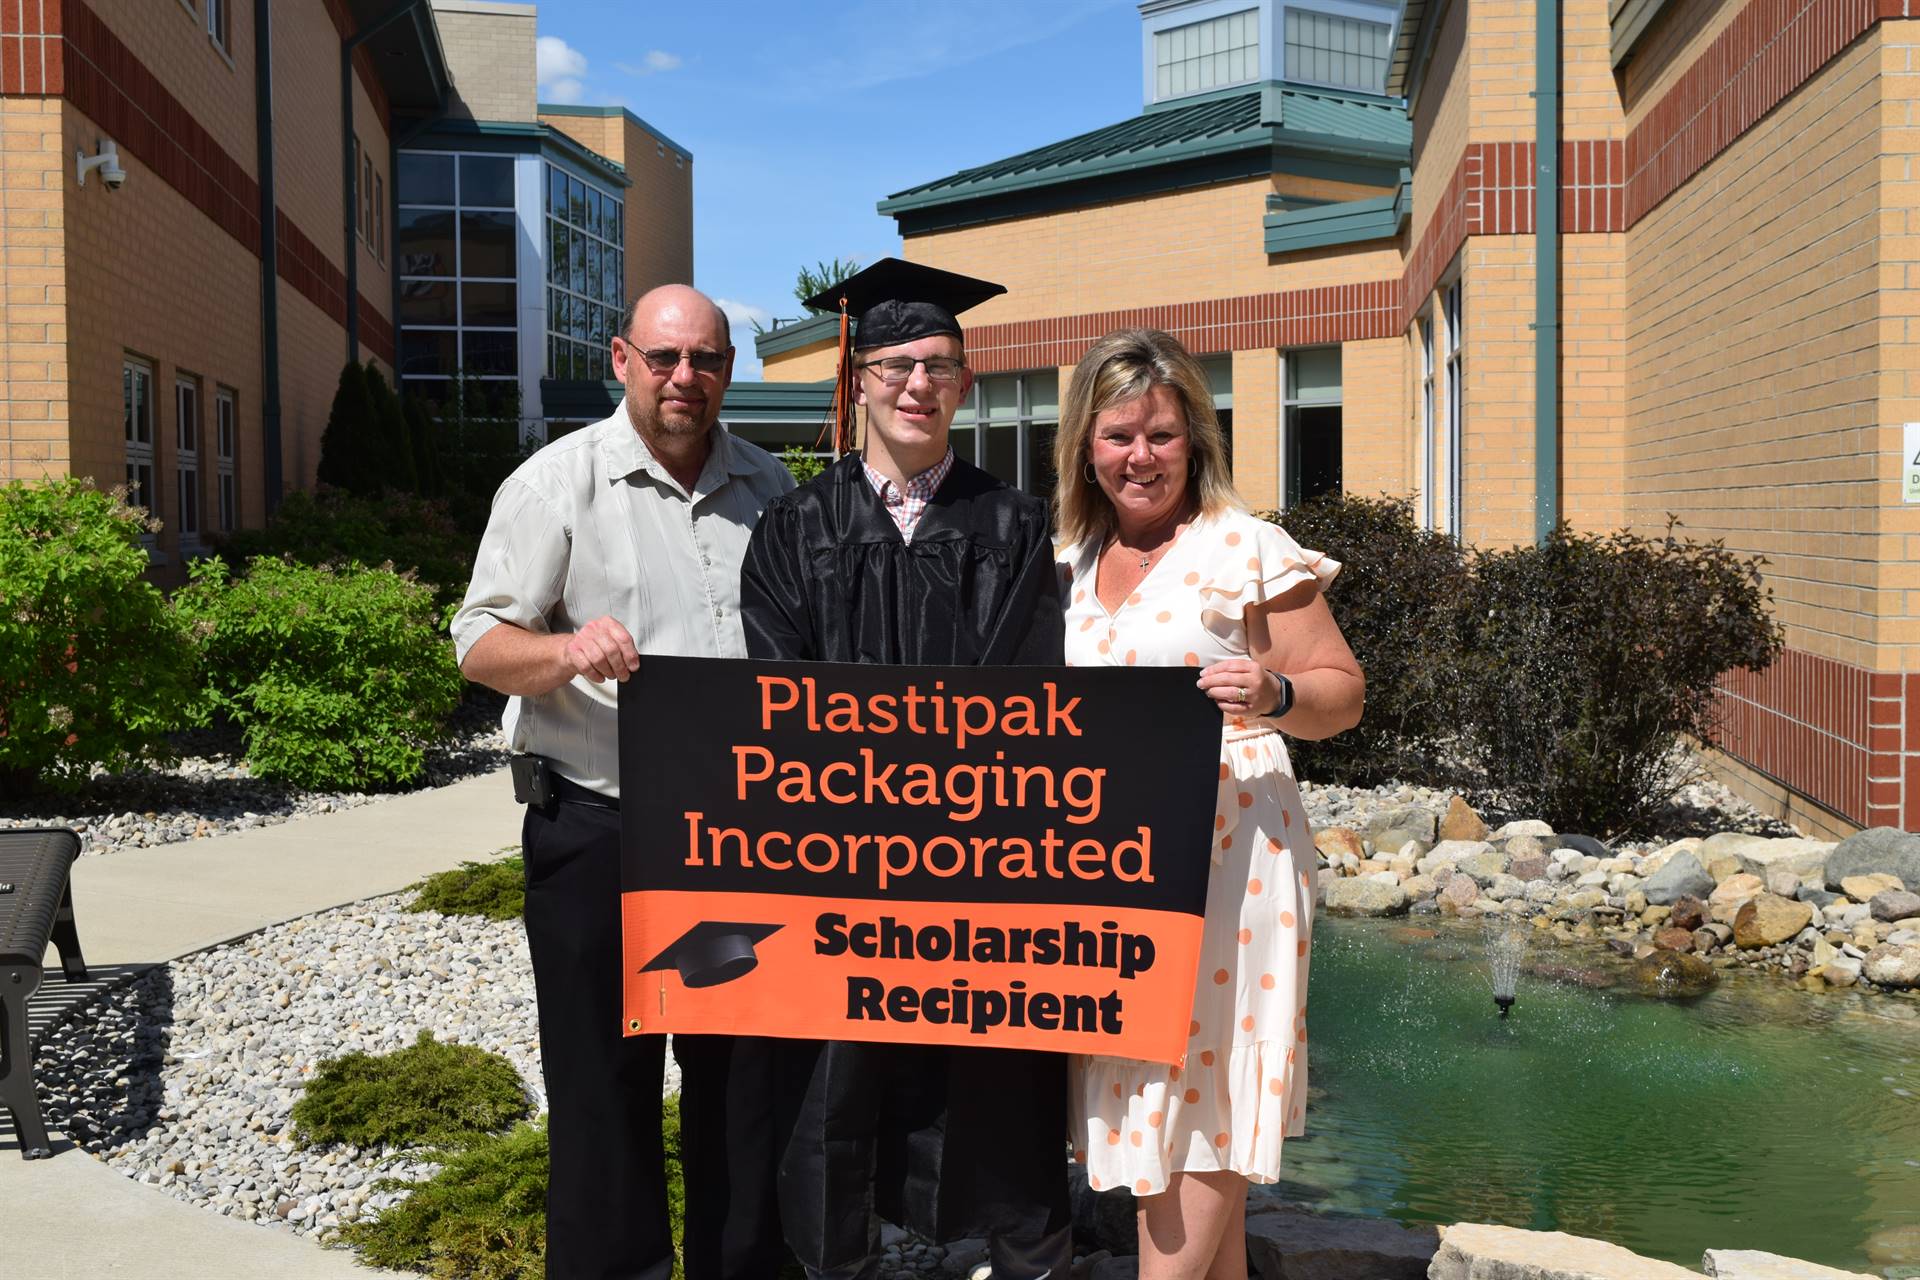 Aj Butler Plastipak Packaging Inc Scholarship